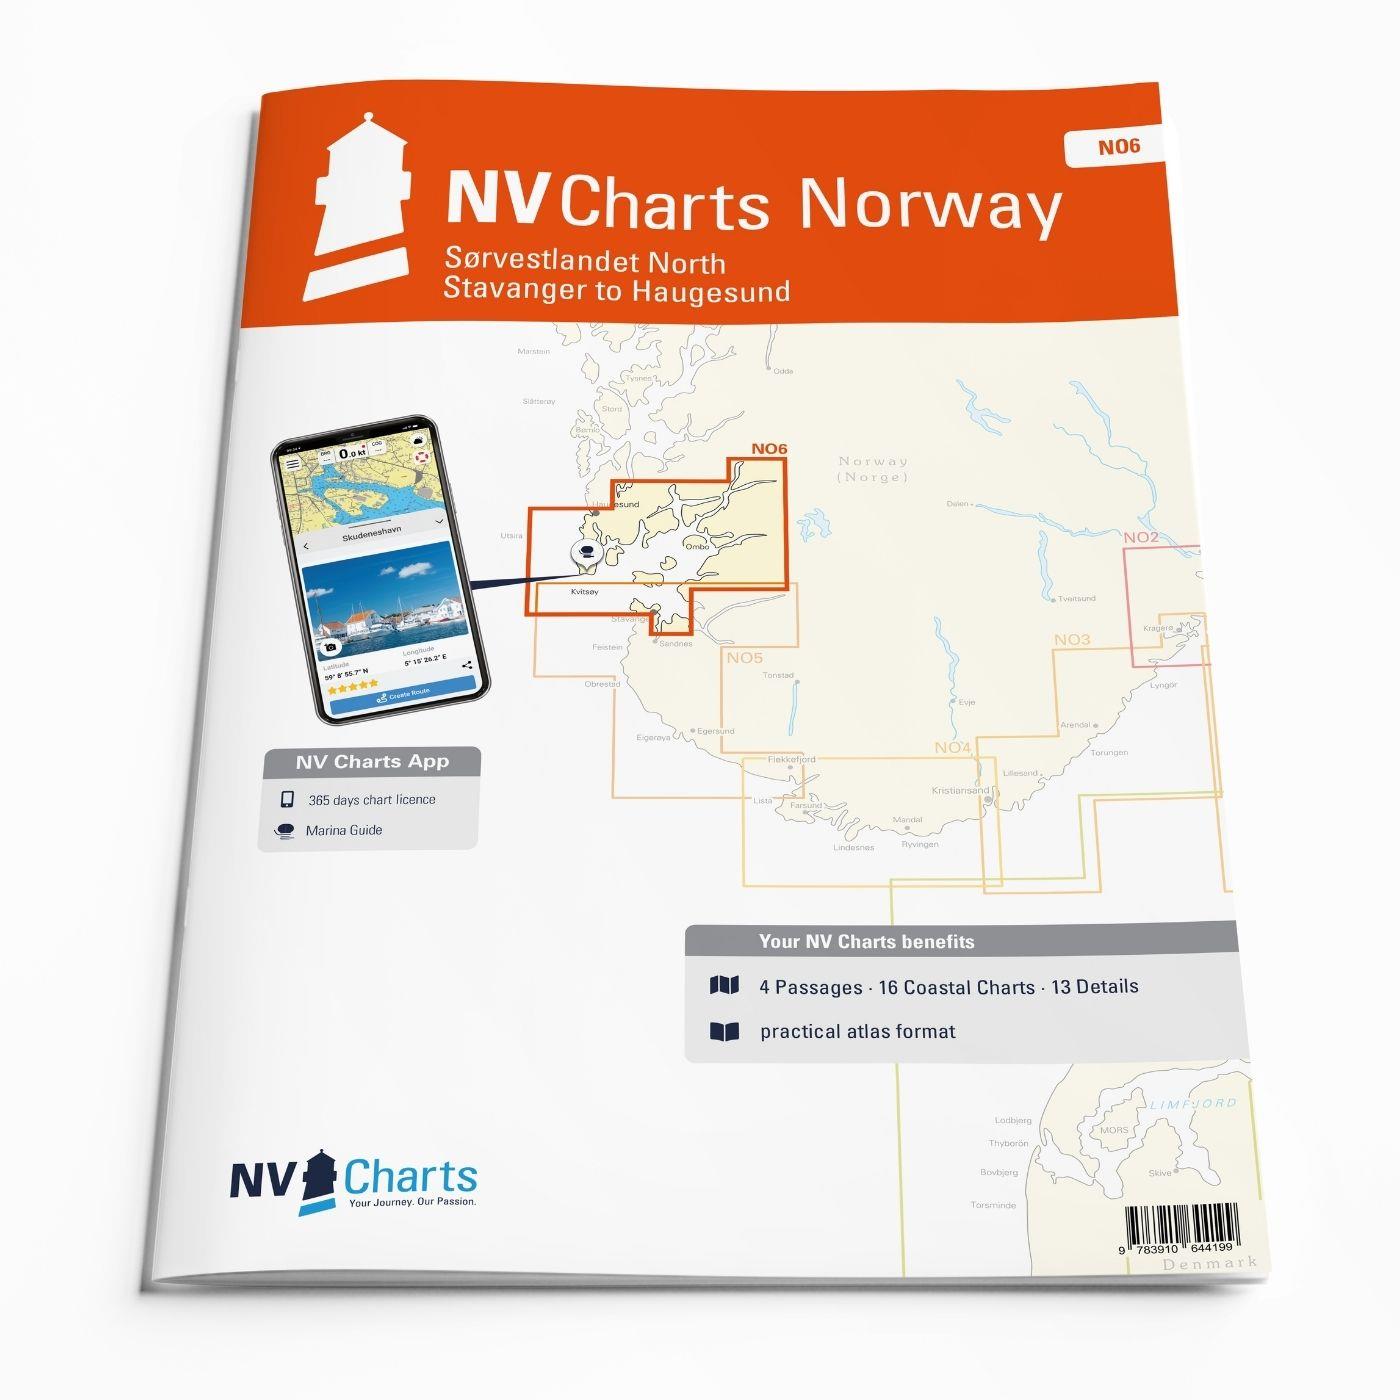 NV Charts Norway NO6 - Sørvestlandet Nord - Stavanger til Haugesund